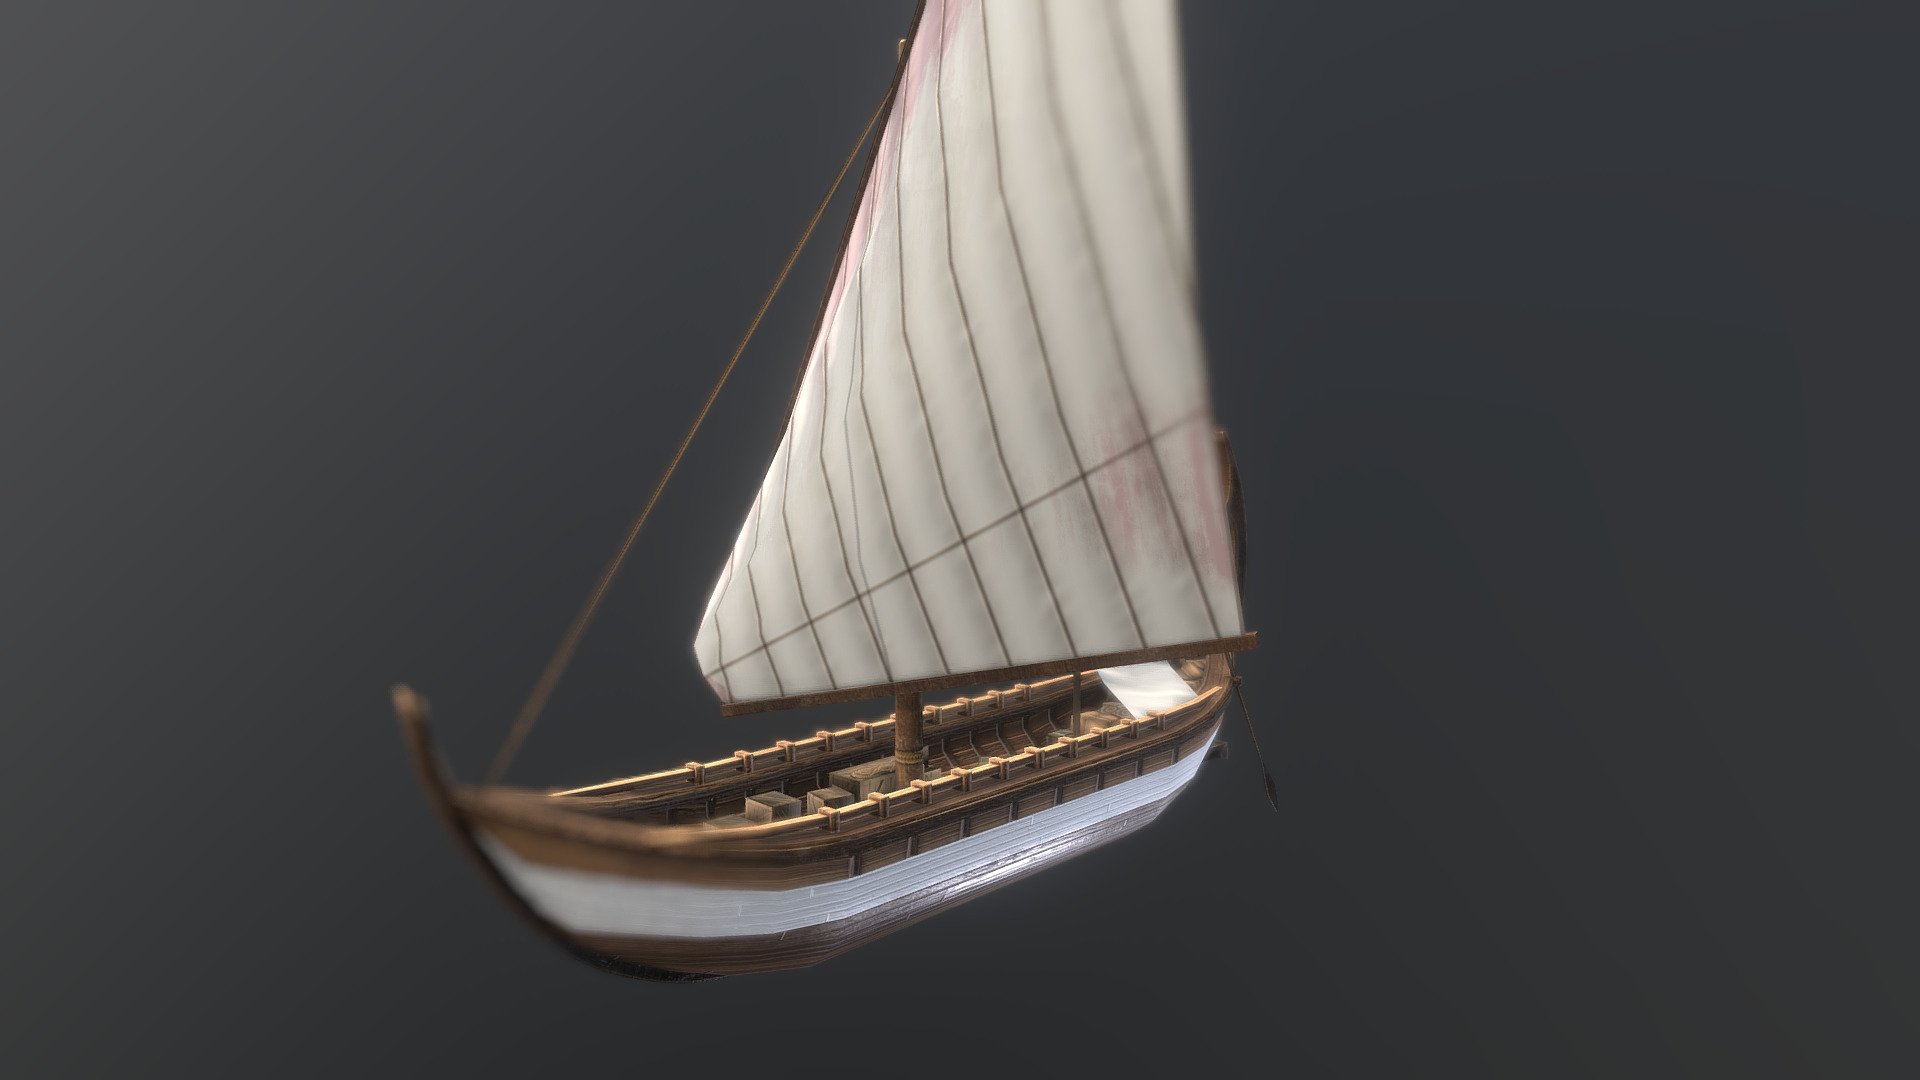 galley - 3D model by Pierre (@daalvehn) 3d model